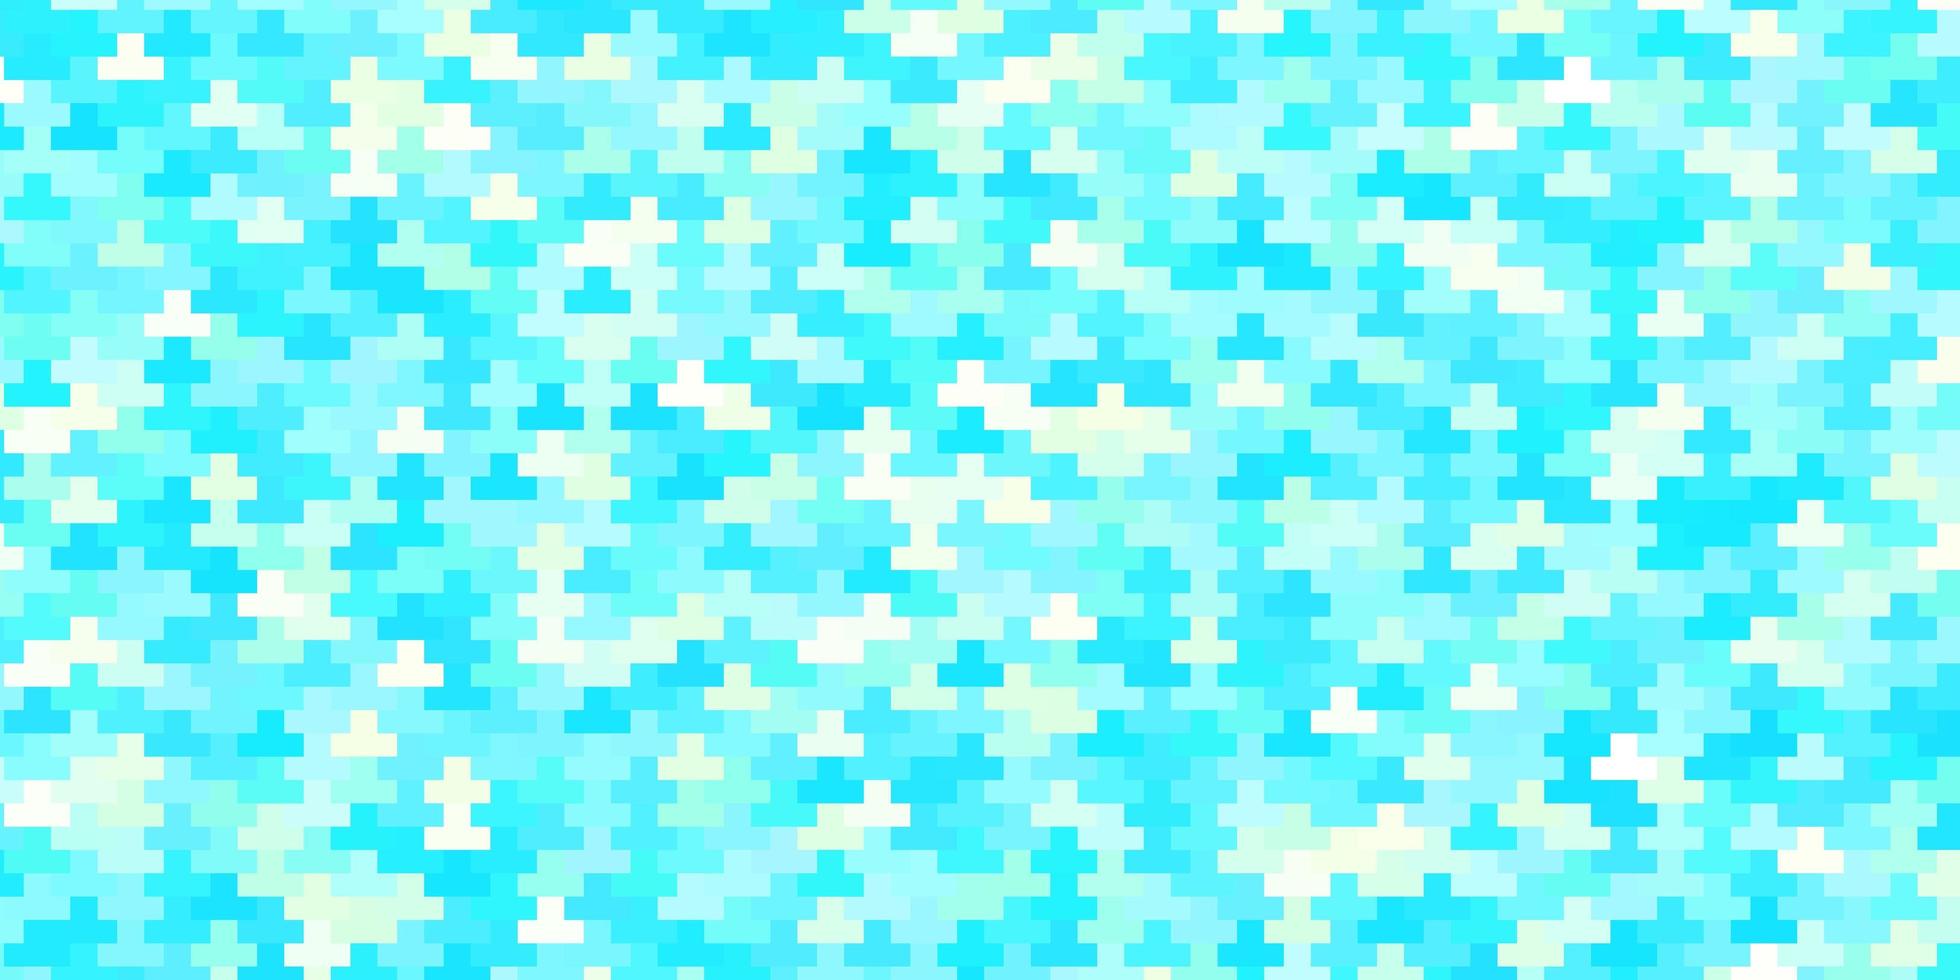 padrão de vetor azul claro e verde em estilo quadrado